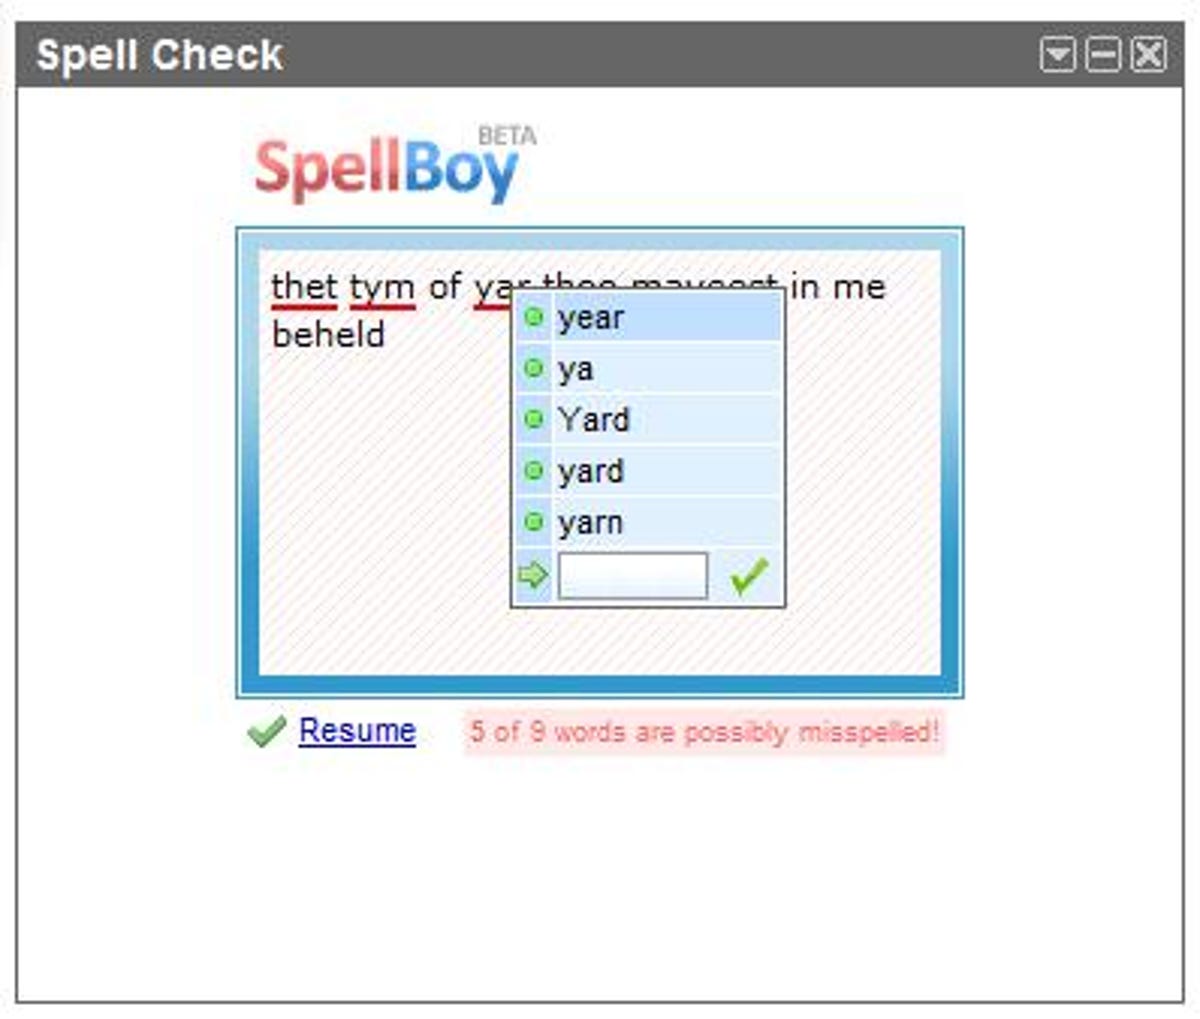 SpellBoy spell-check gadget for iGoogle